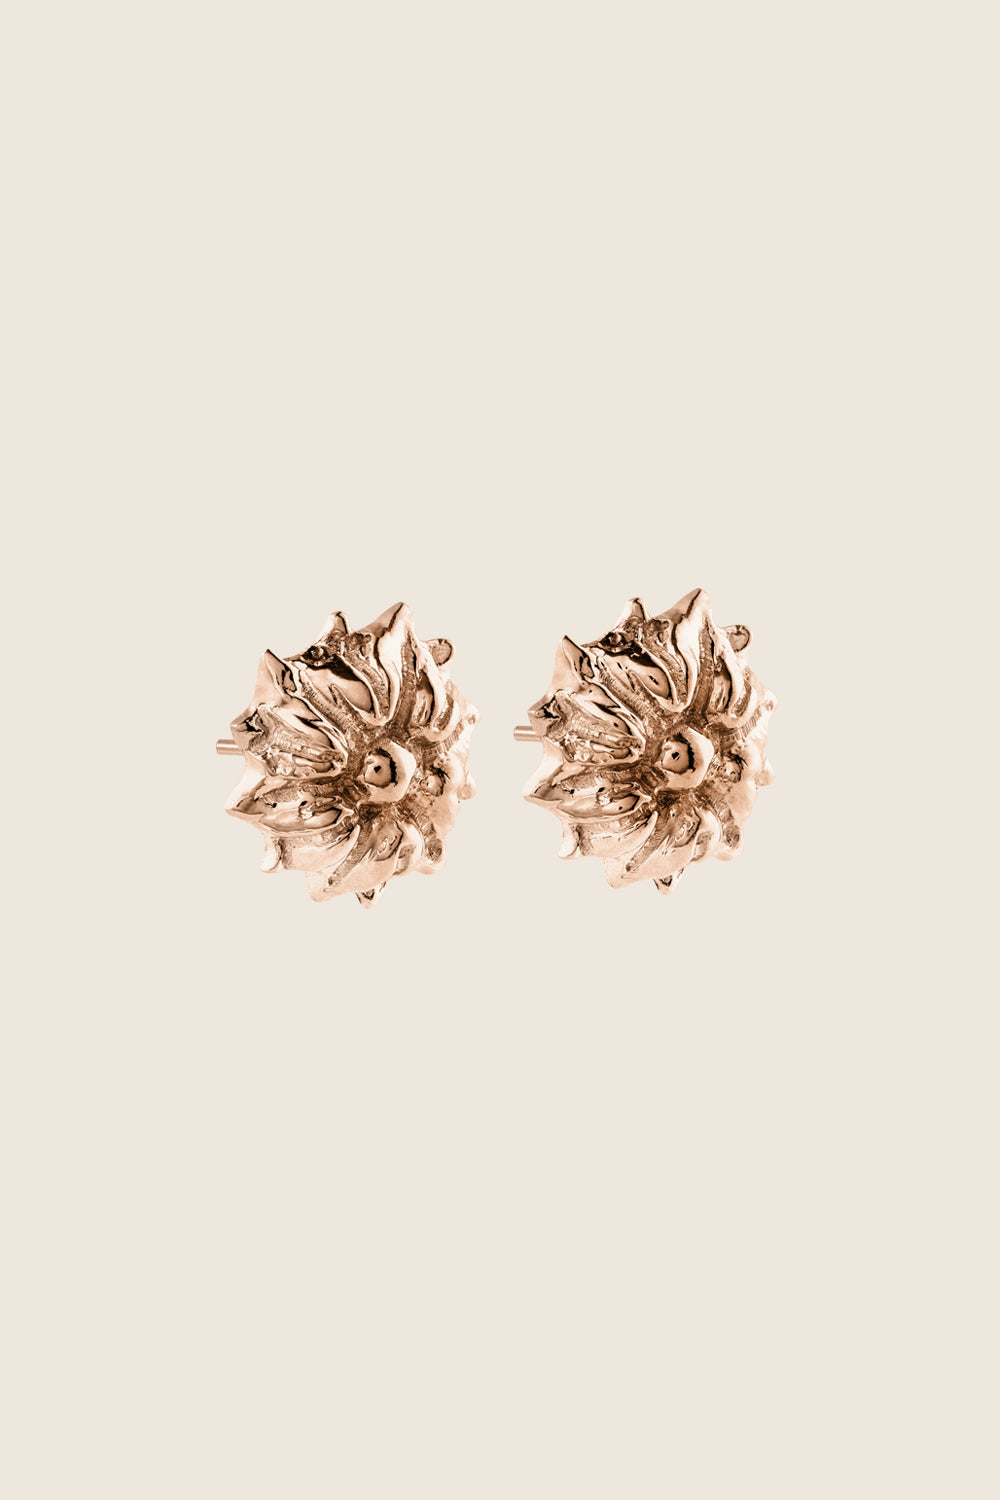 kolczyki kwiaty różowe złoto 585 BELLIS biżuteria artystyczna UMIAR polski design